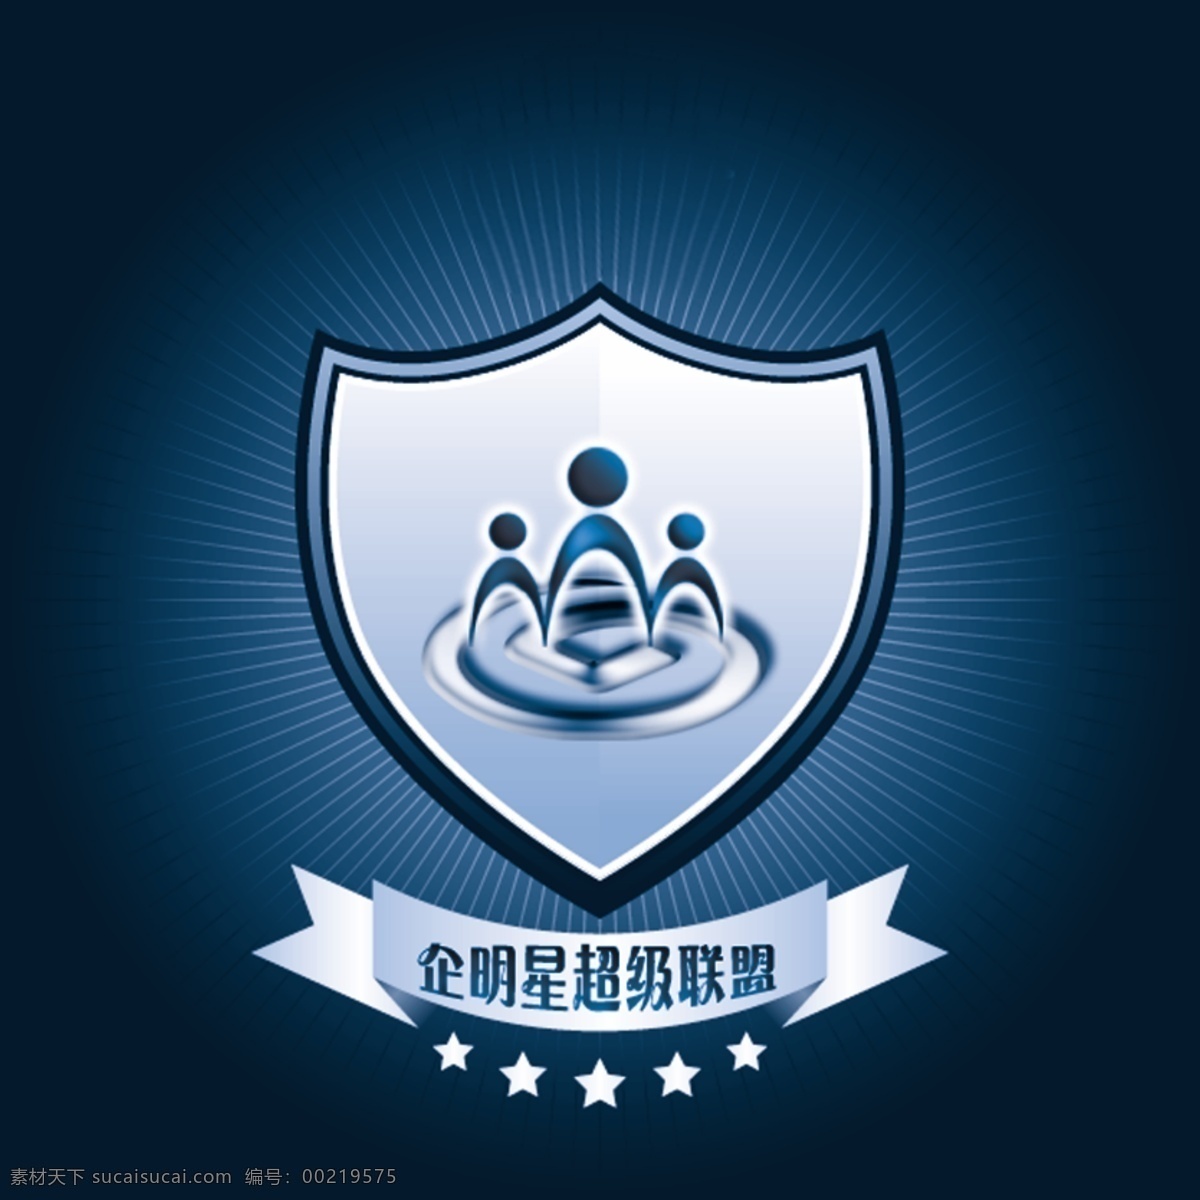 企业 明星 超级 联盟 logo 企业明星 超级联盟 标志 图标设计 logo设计